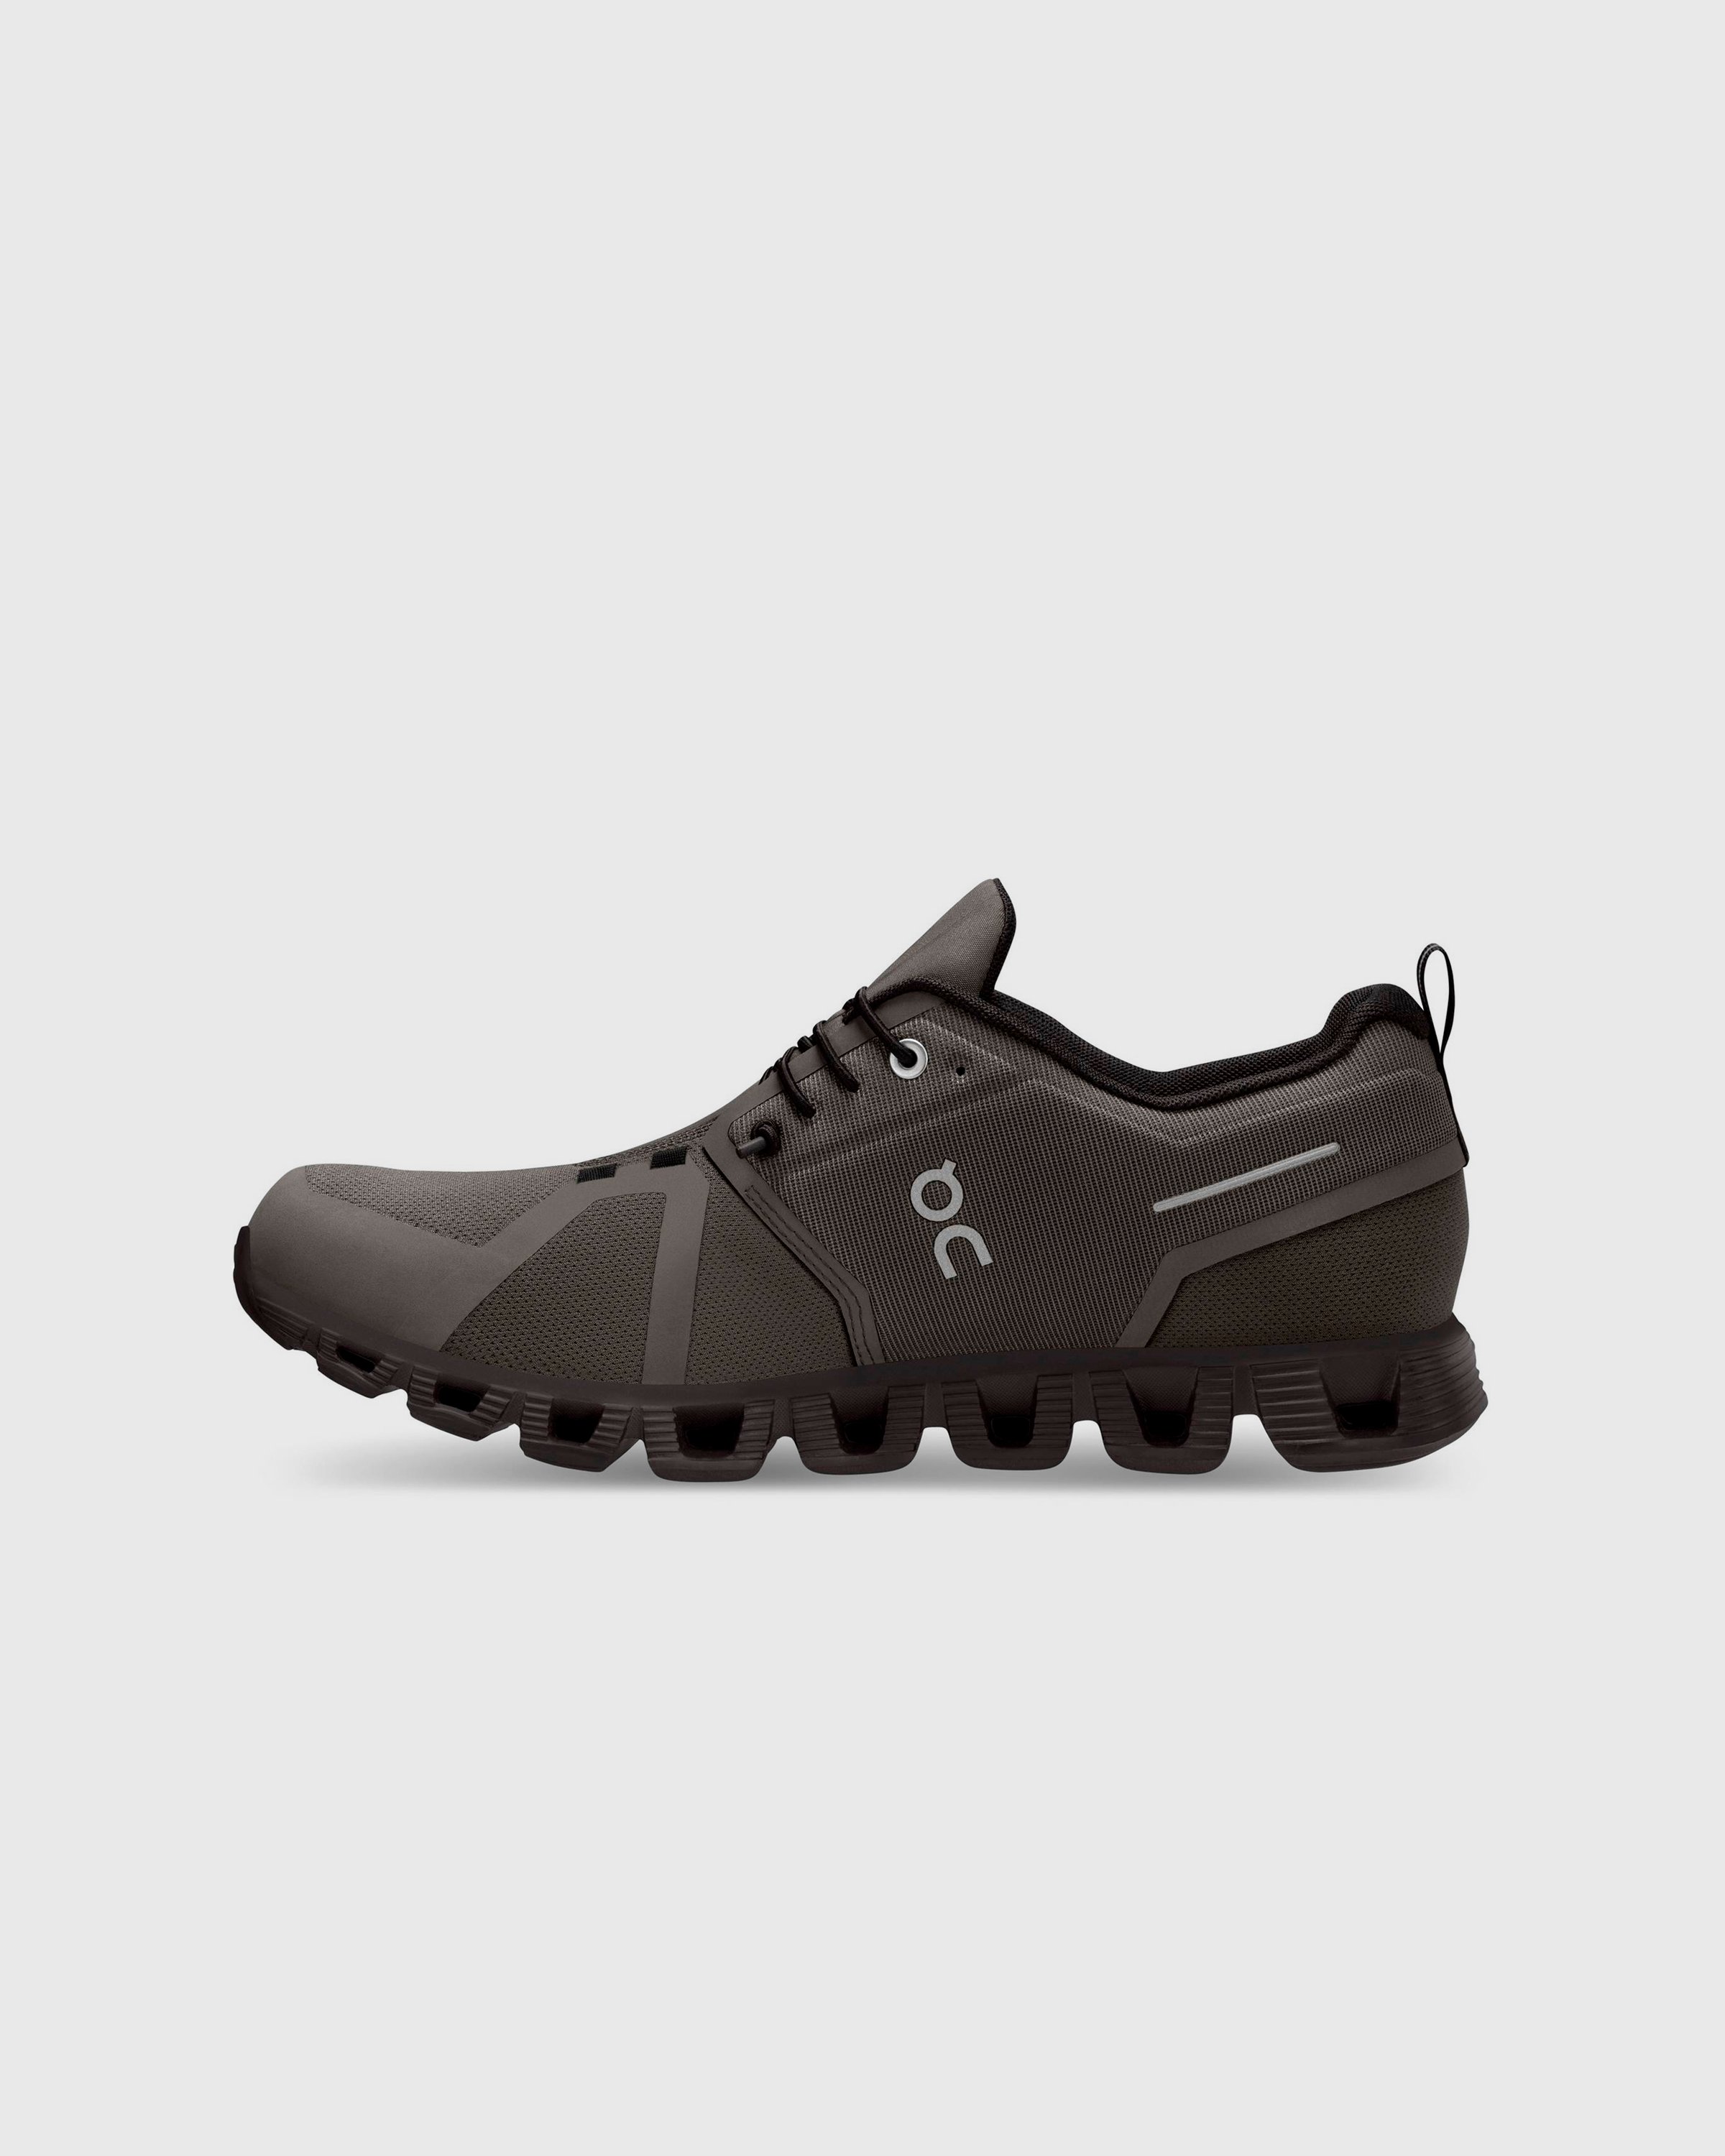 On - Cloud 5 Waterproof Olive/Black - Footwear - Green - Image 2